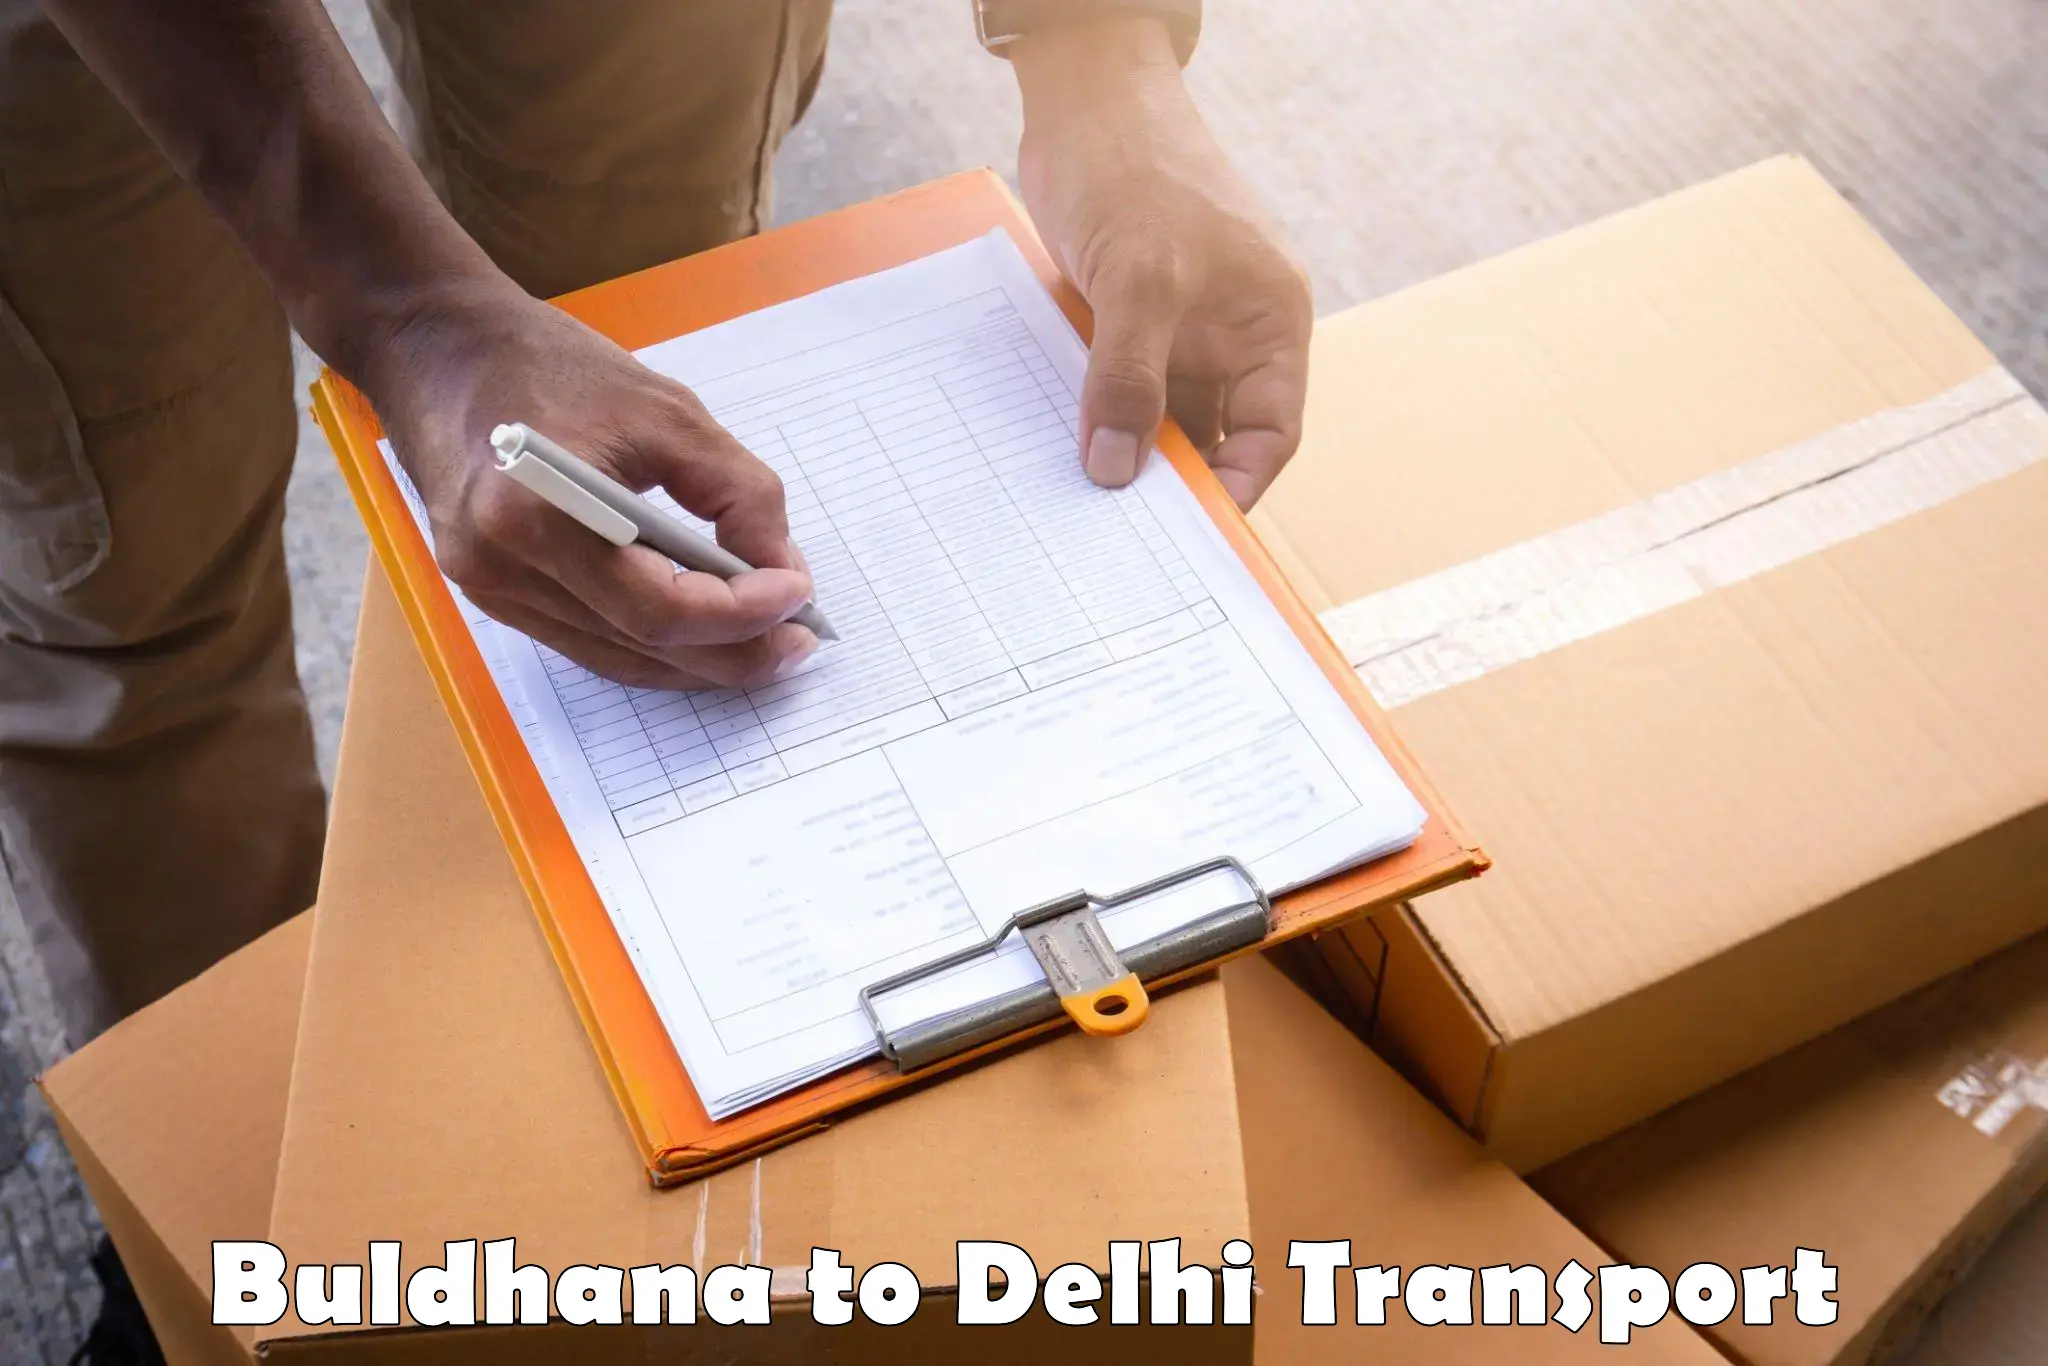 Interstate goods transport Buldhana to Delhi Technological University DTU